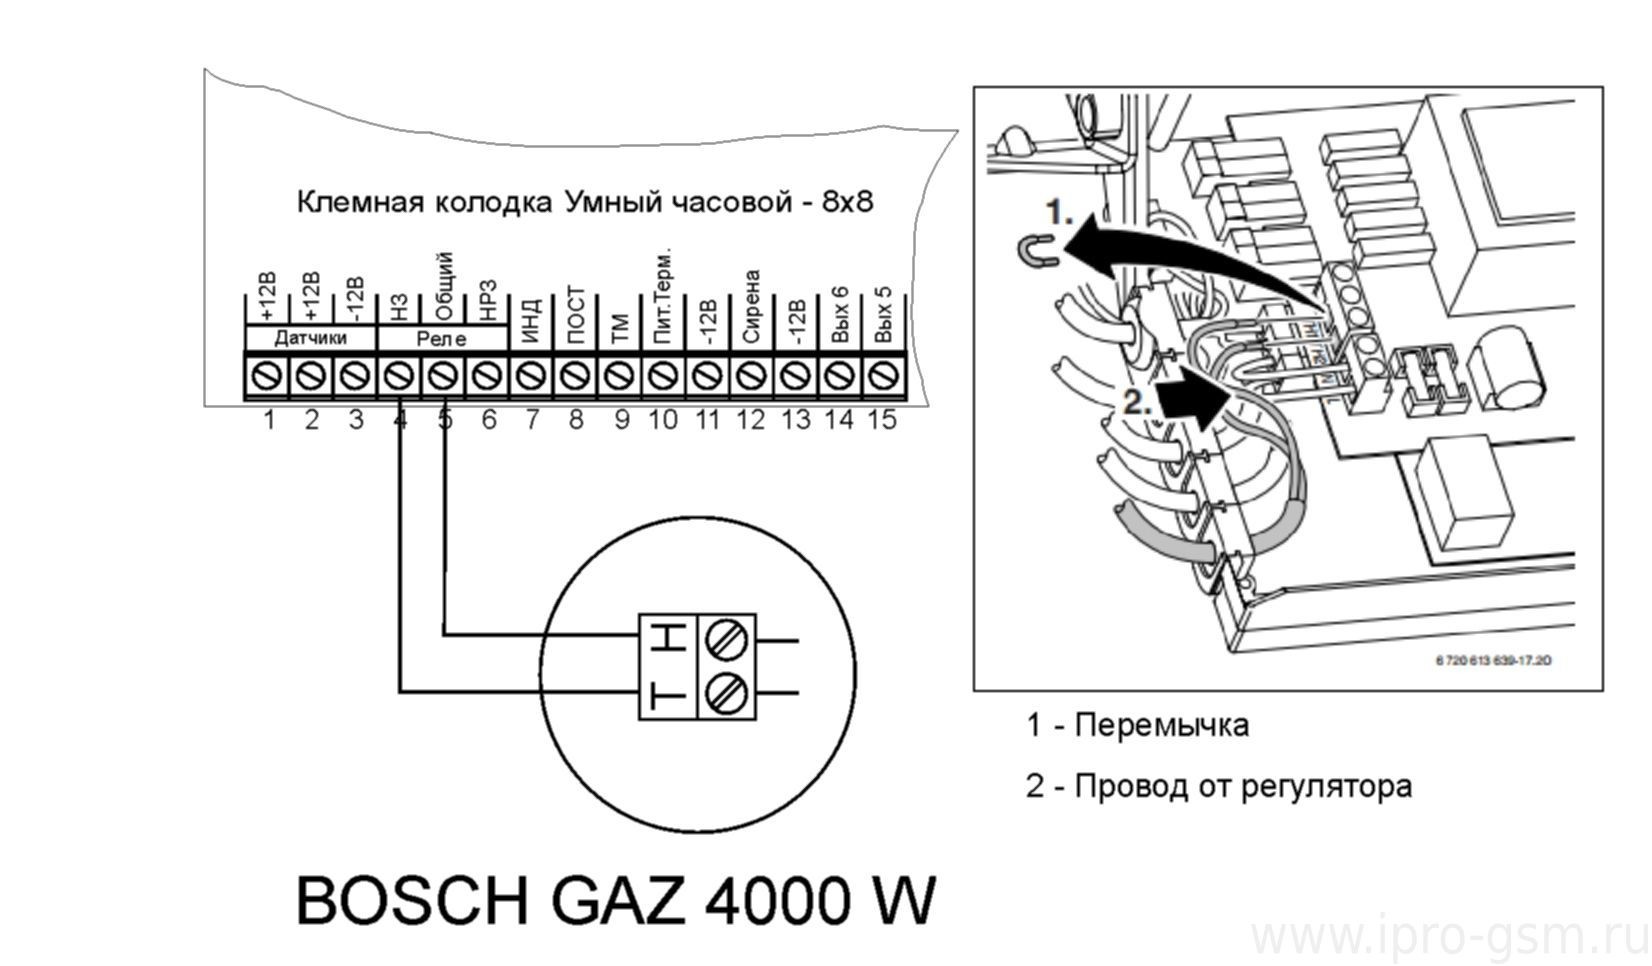 Схема подключения Часовой 8х8 к котлу Bosch GAZ 4000 W